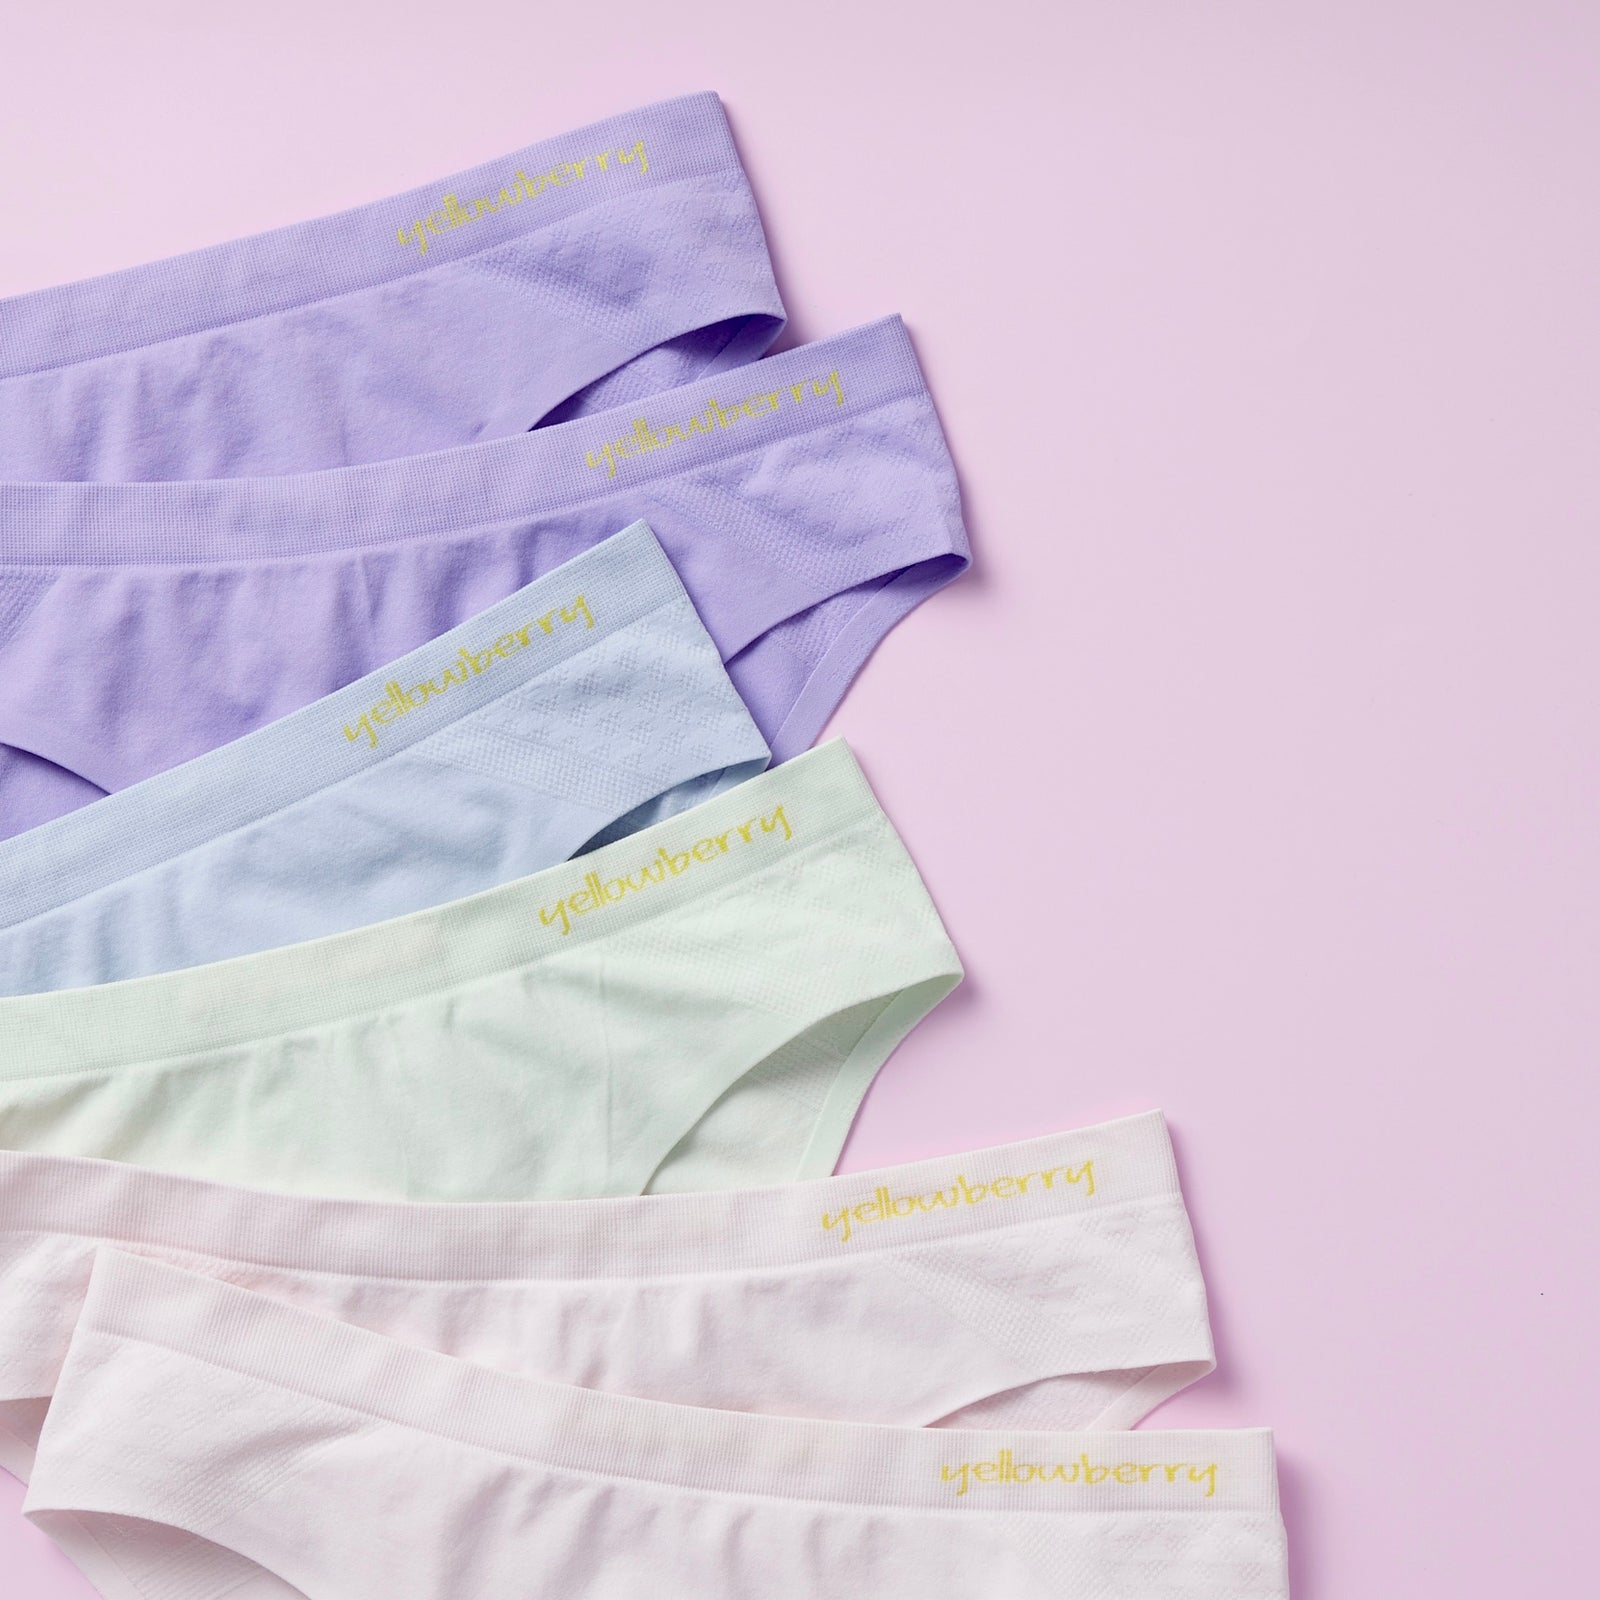 Underwear for Girls: Buy Underwear for Teenage Girls Online at